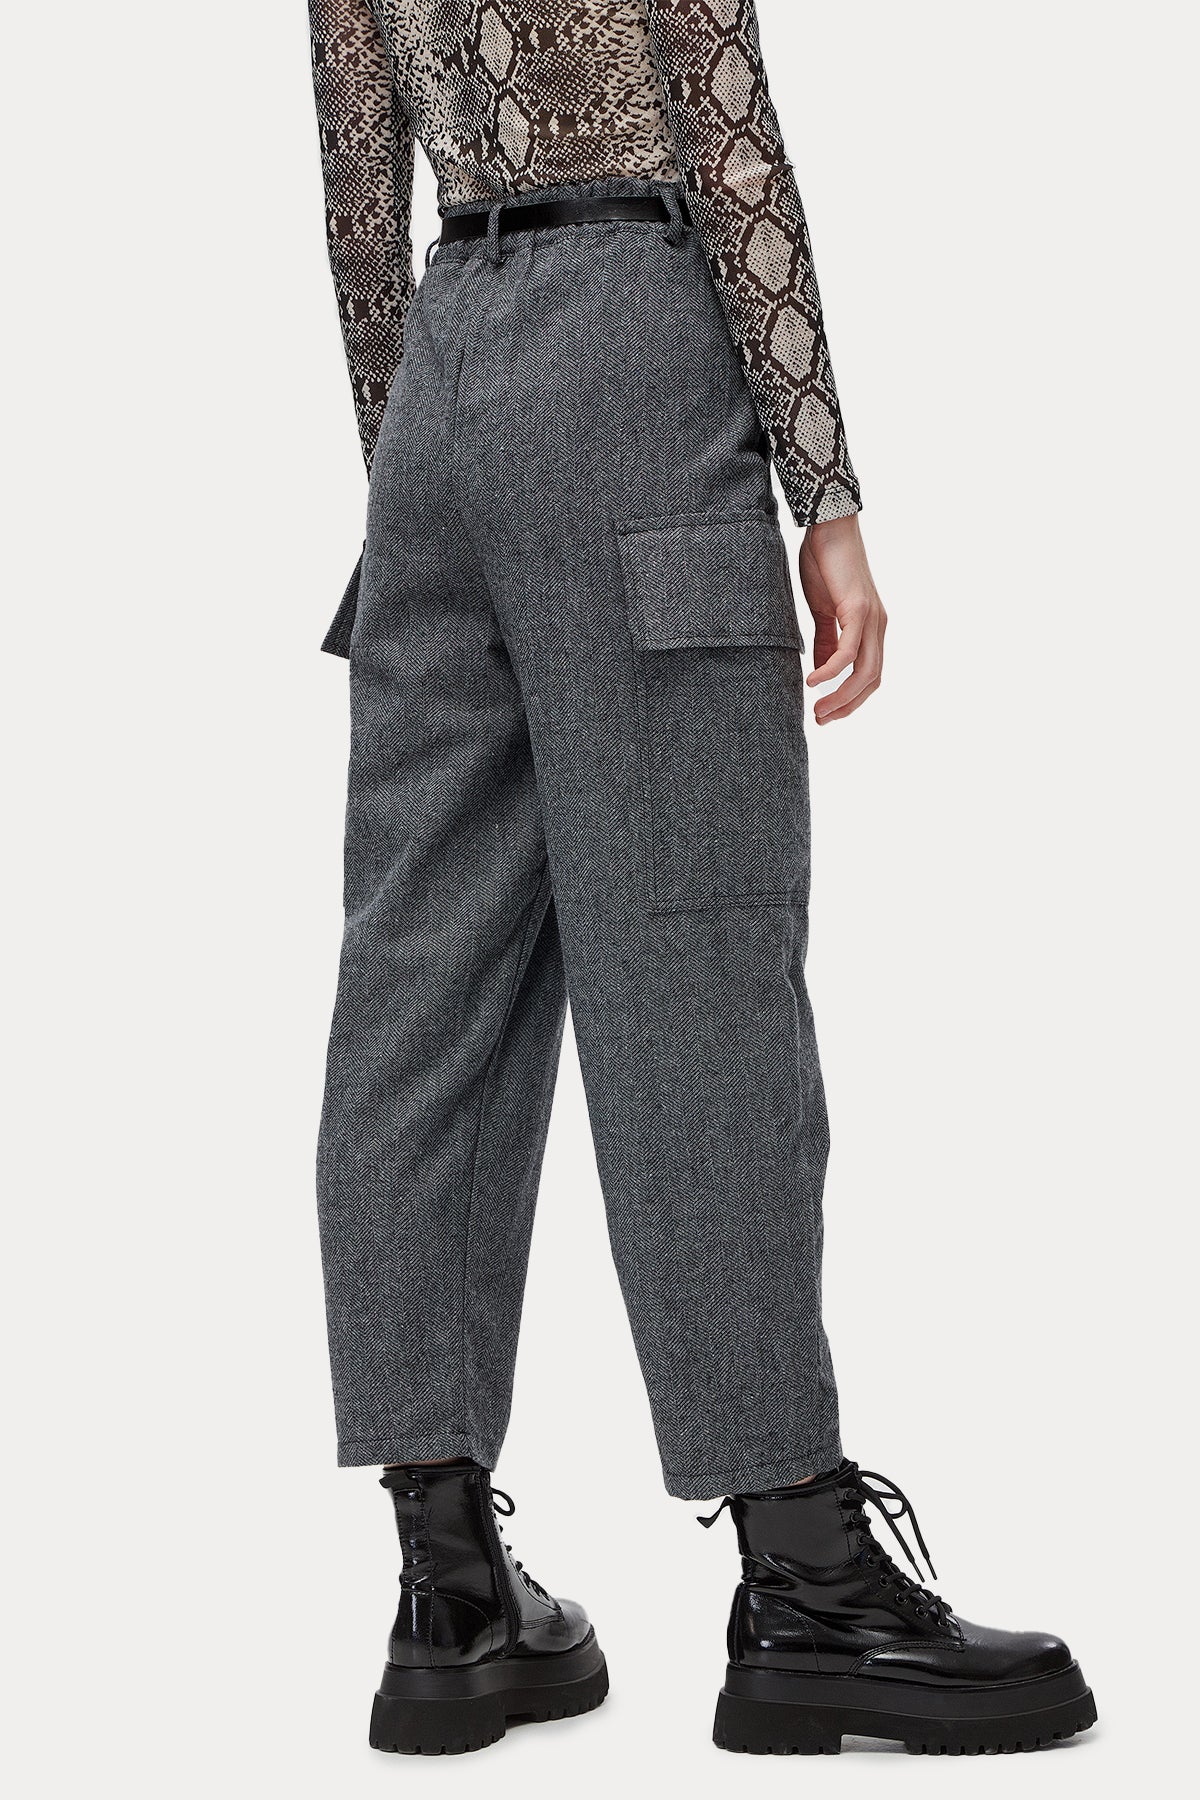 Bsb Geniş Kesim Beli Lastikli Kargo Pantolon-Libas Trendy Fashion Store